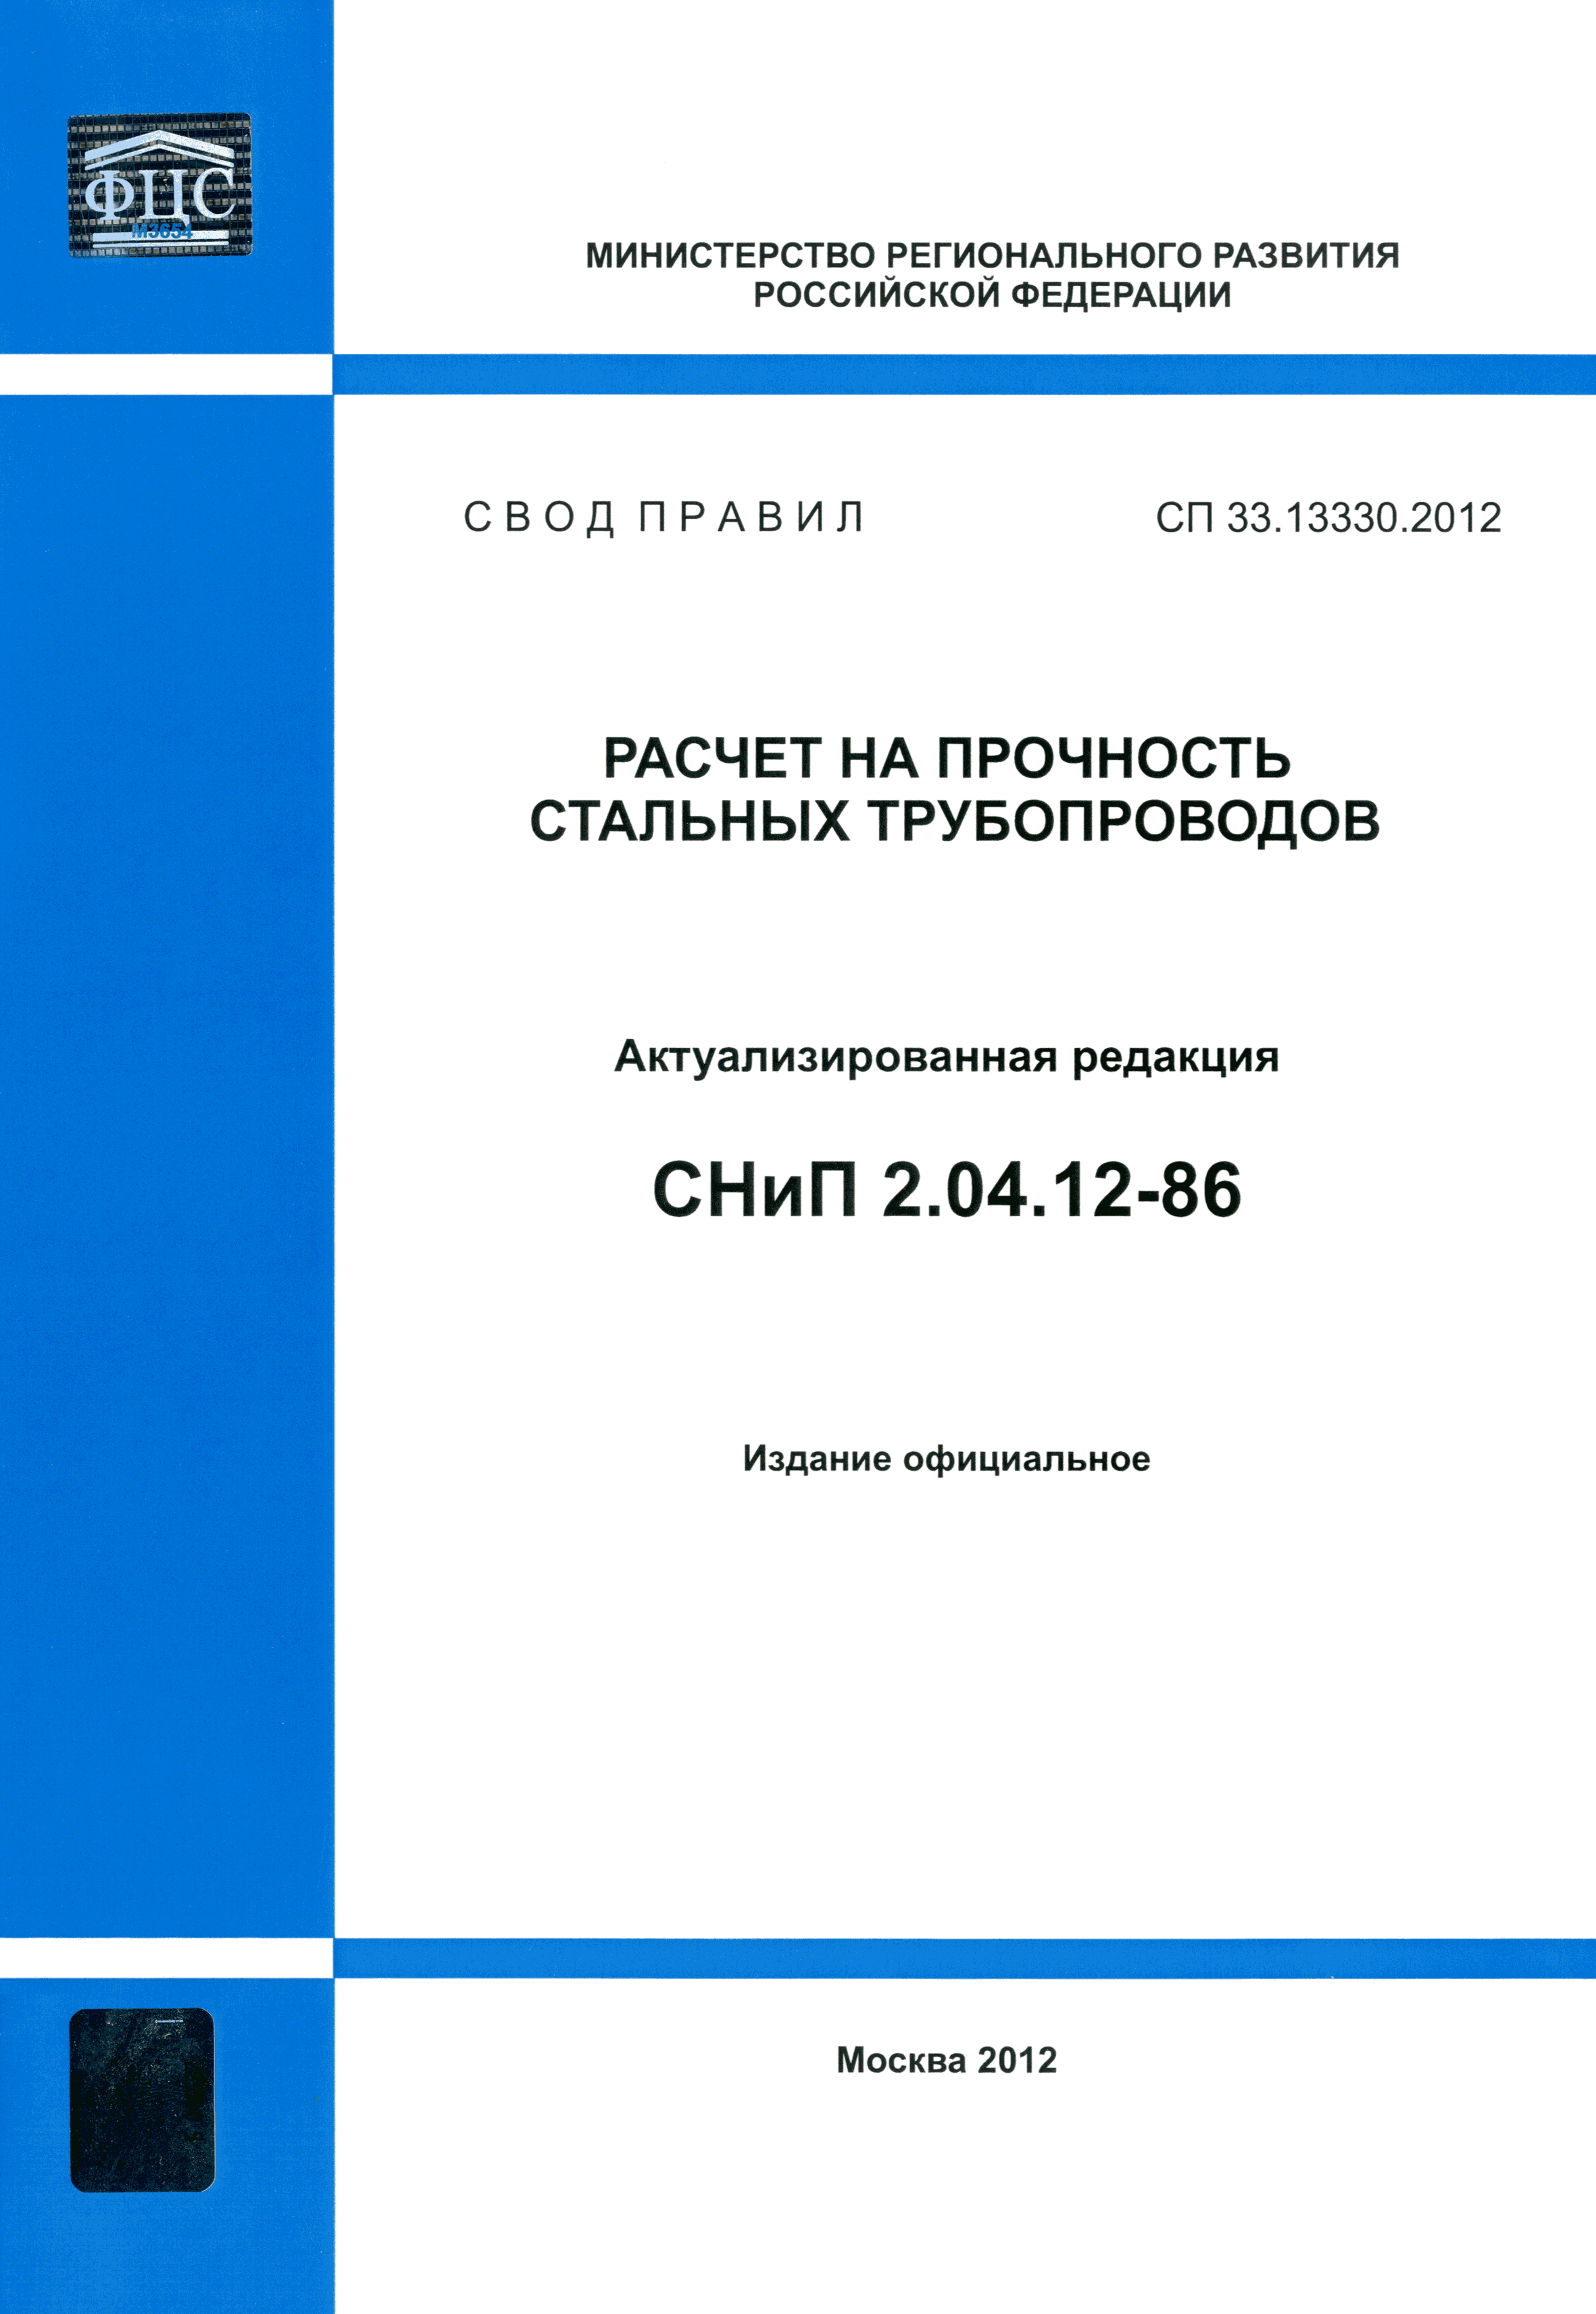 СП 33.13330.2012